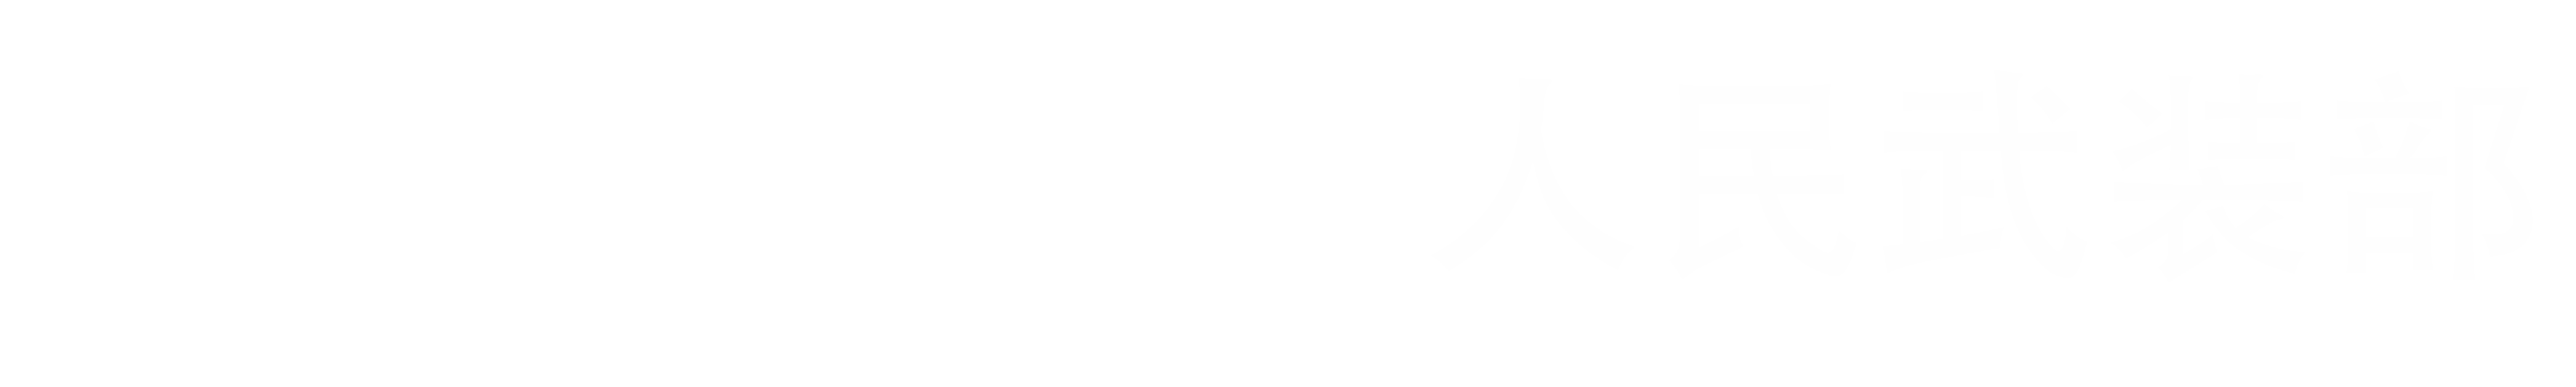 上海交通大学武装部